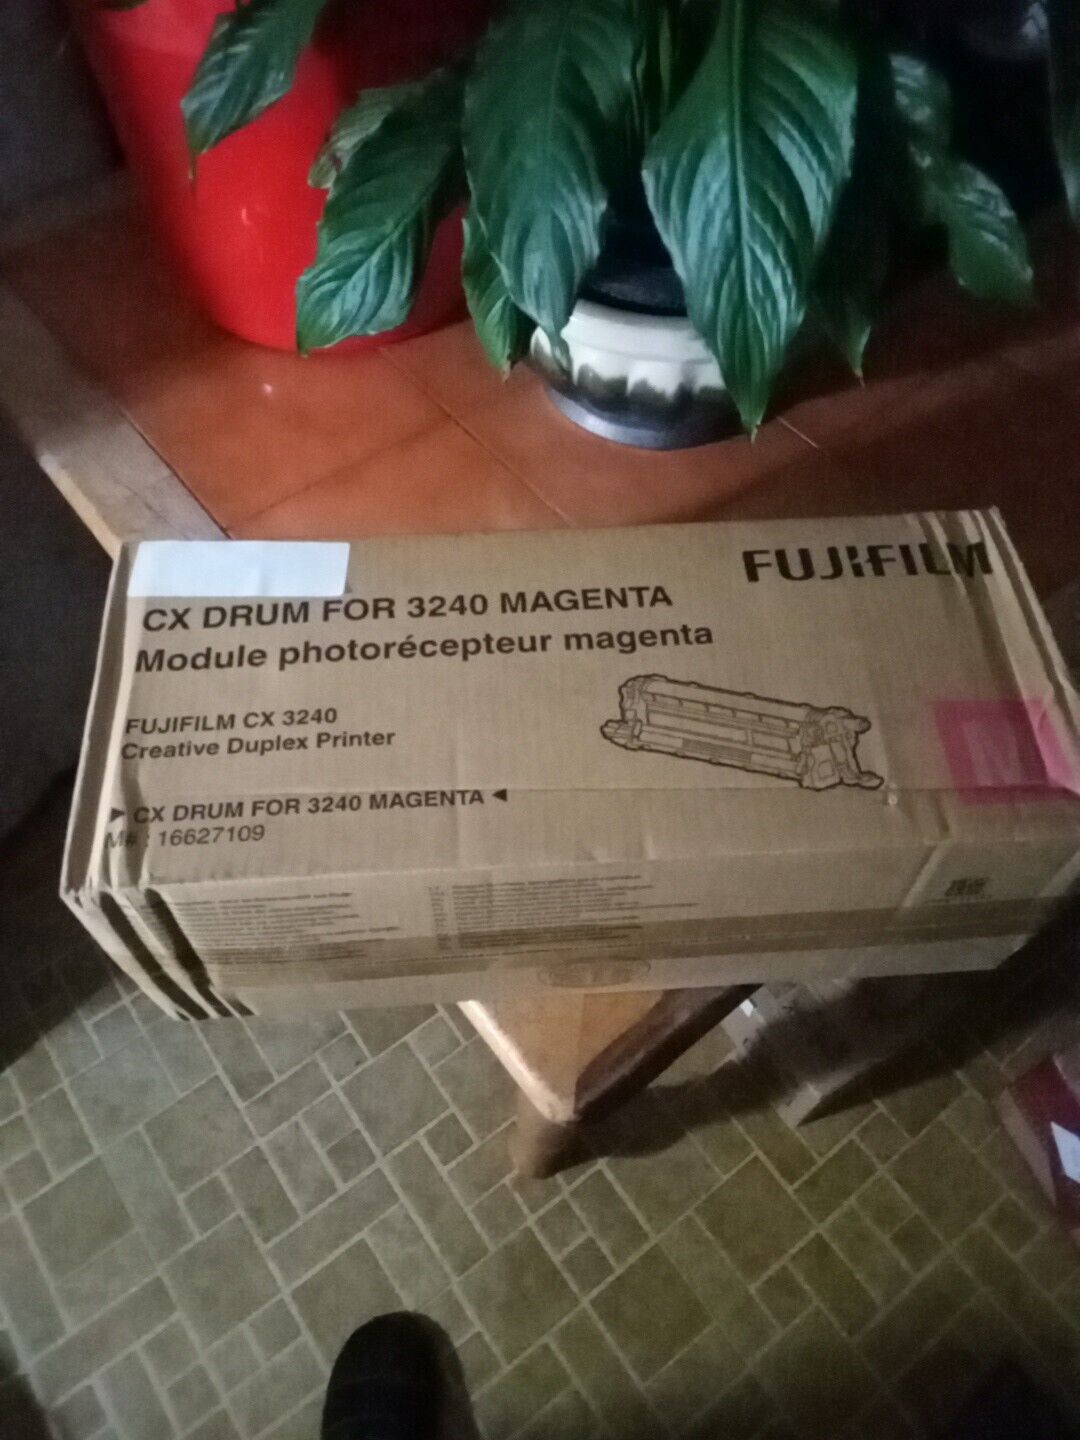 Fujifilm CX Drum For 3240 Magenta Module photoreceptor Magenta 16627109